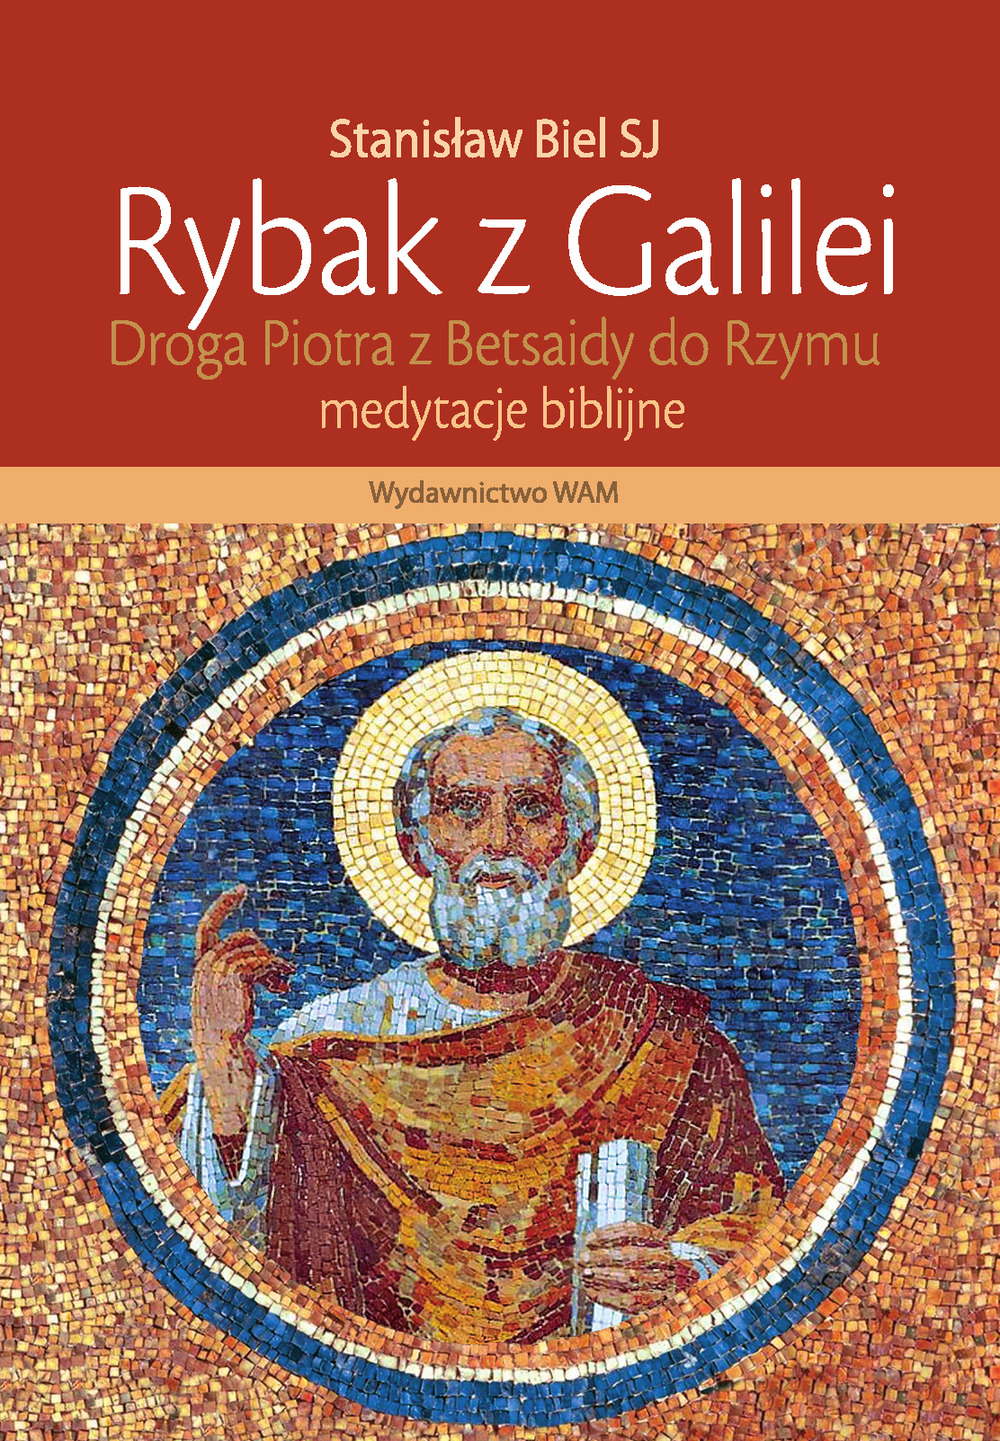 Rybak z Galilei – czyli o literaturze pobożnościowej…